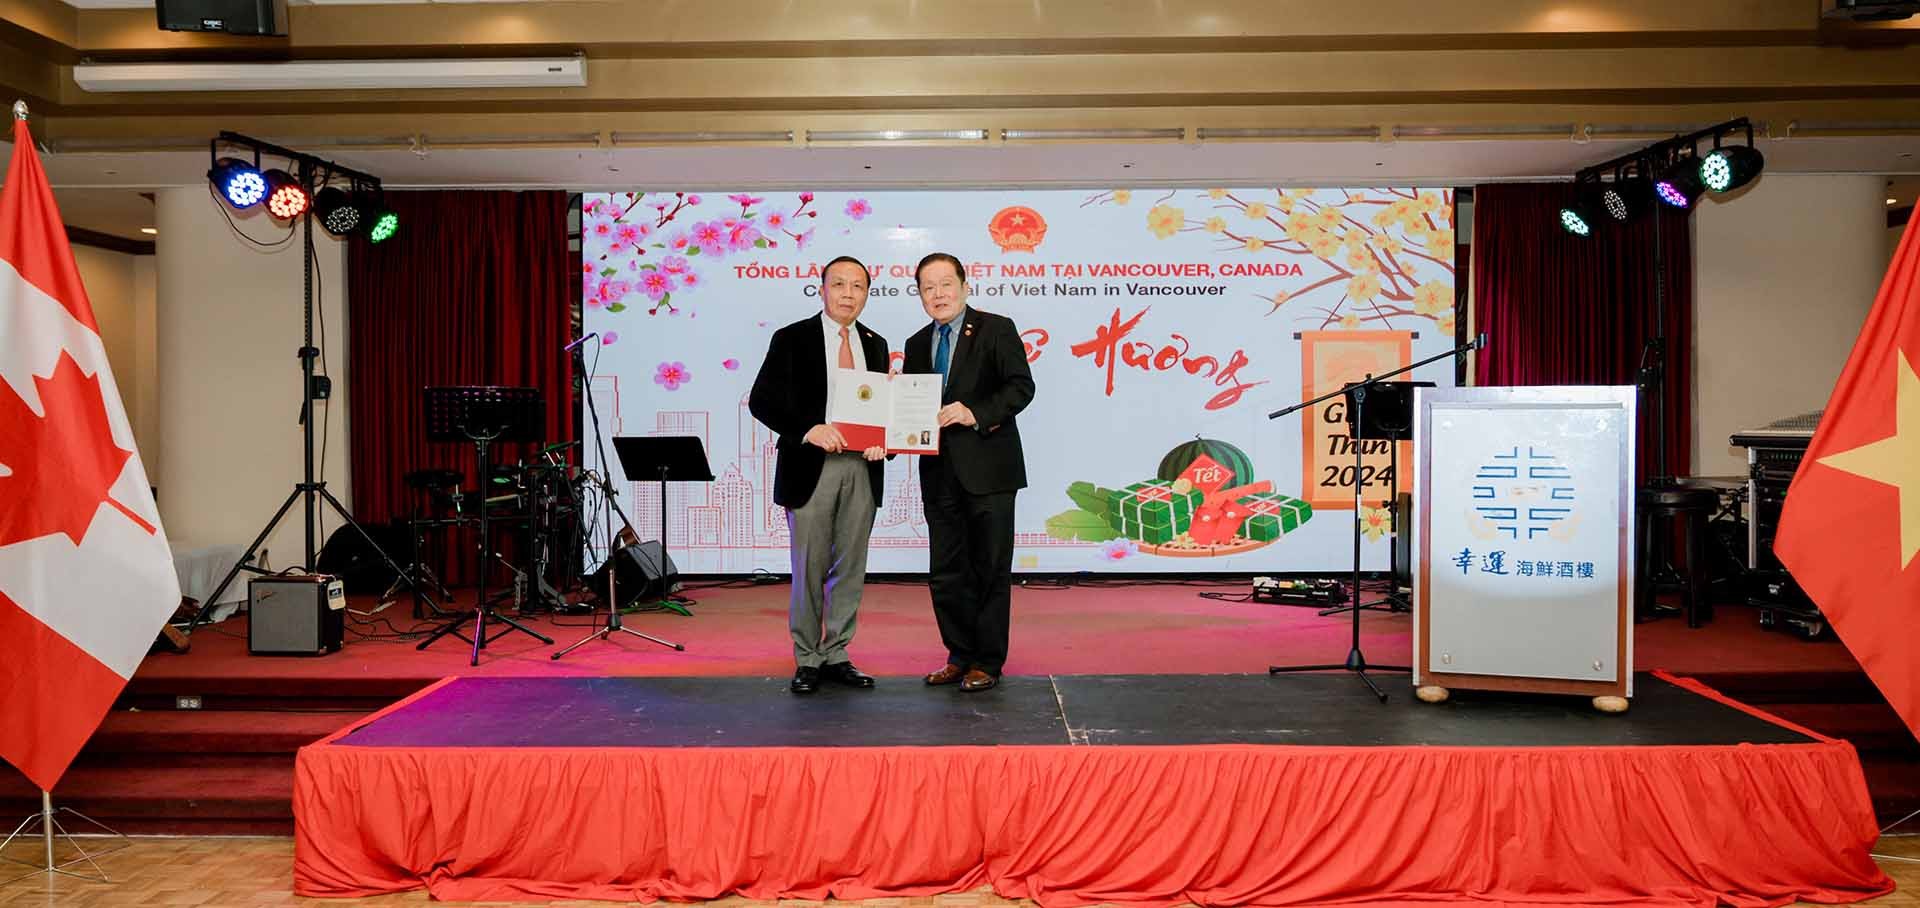 Thượng nghị sĩ Victor Oh trao kỷ niệm chương cho Tổng Lãnh sự Nguyễn Quang Trung.